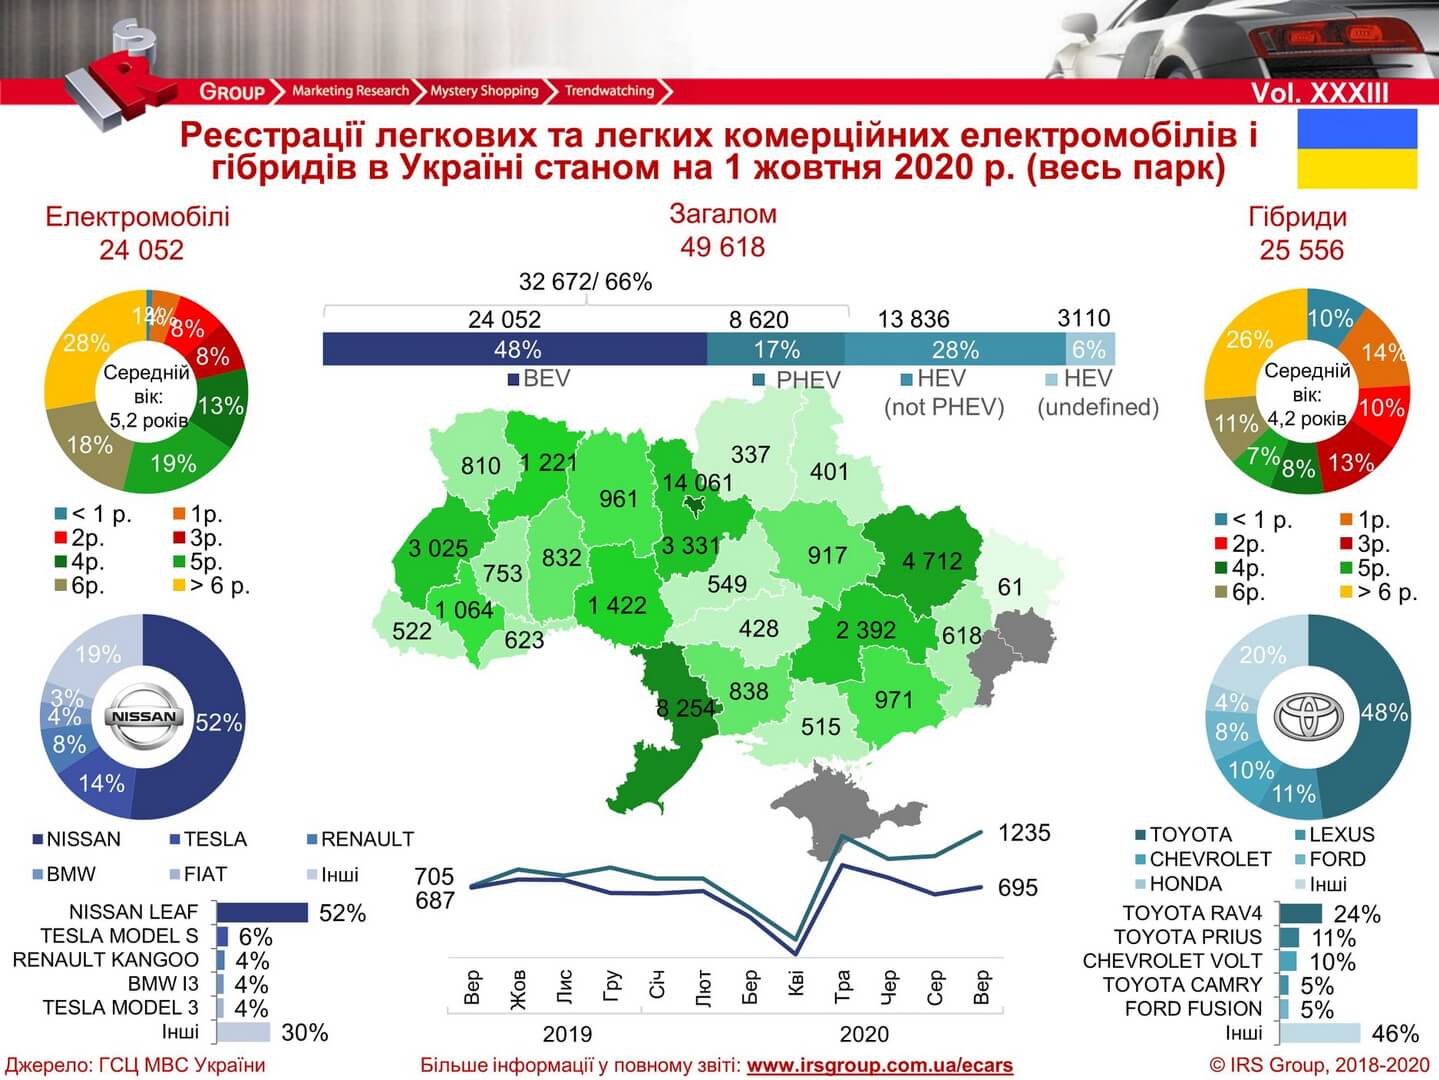 Количество зарегистрированных электрических и гибридных автомобилей в Украине на 01.10.2020 года